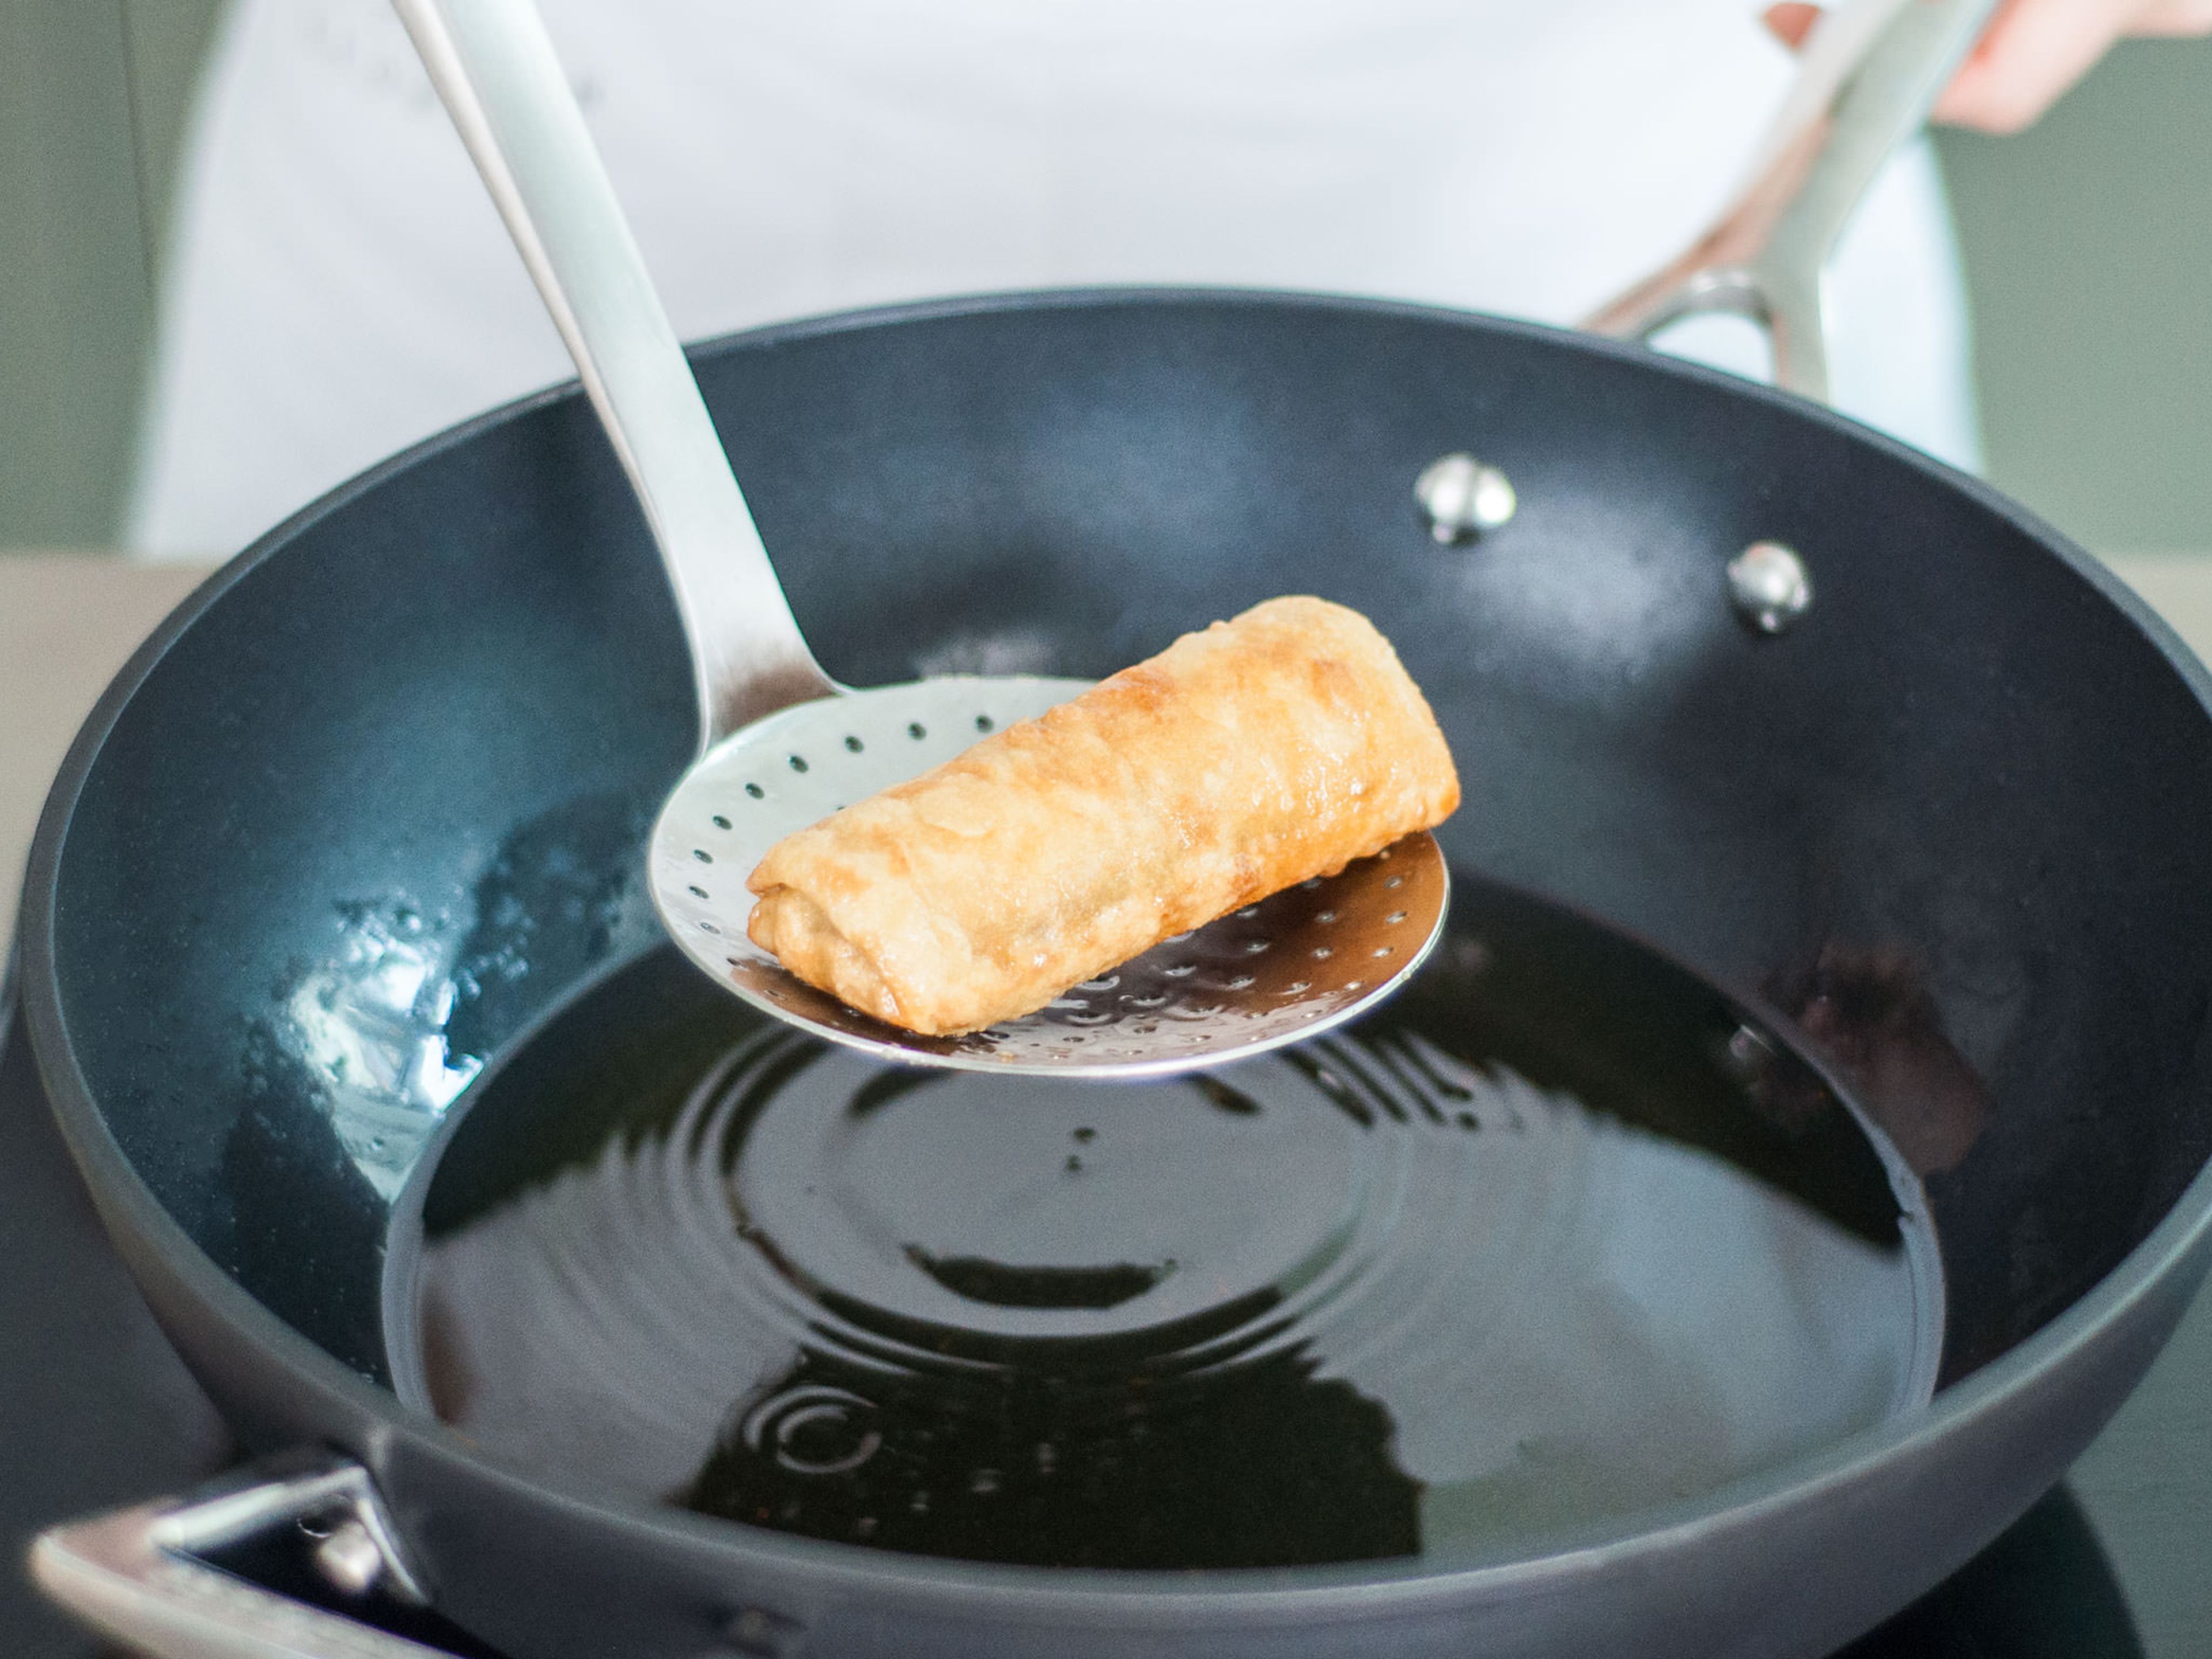 Öl in einer tiefen Pfanne erhitzen und für 3 - 4 Min. braten, bis sie goldbraun sind. Auf einem Küchenpapier abfetten. Guten Appetit!